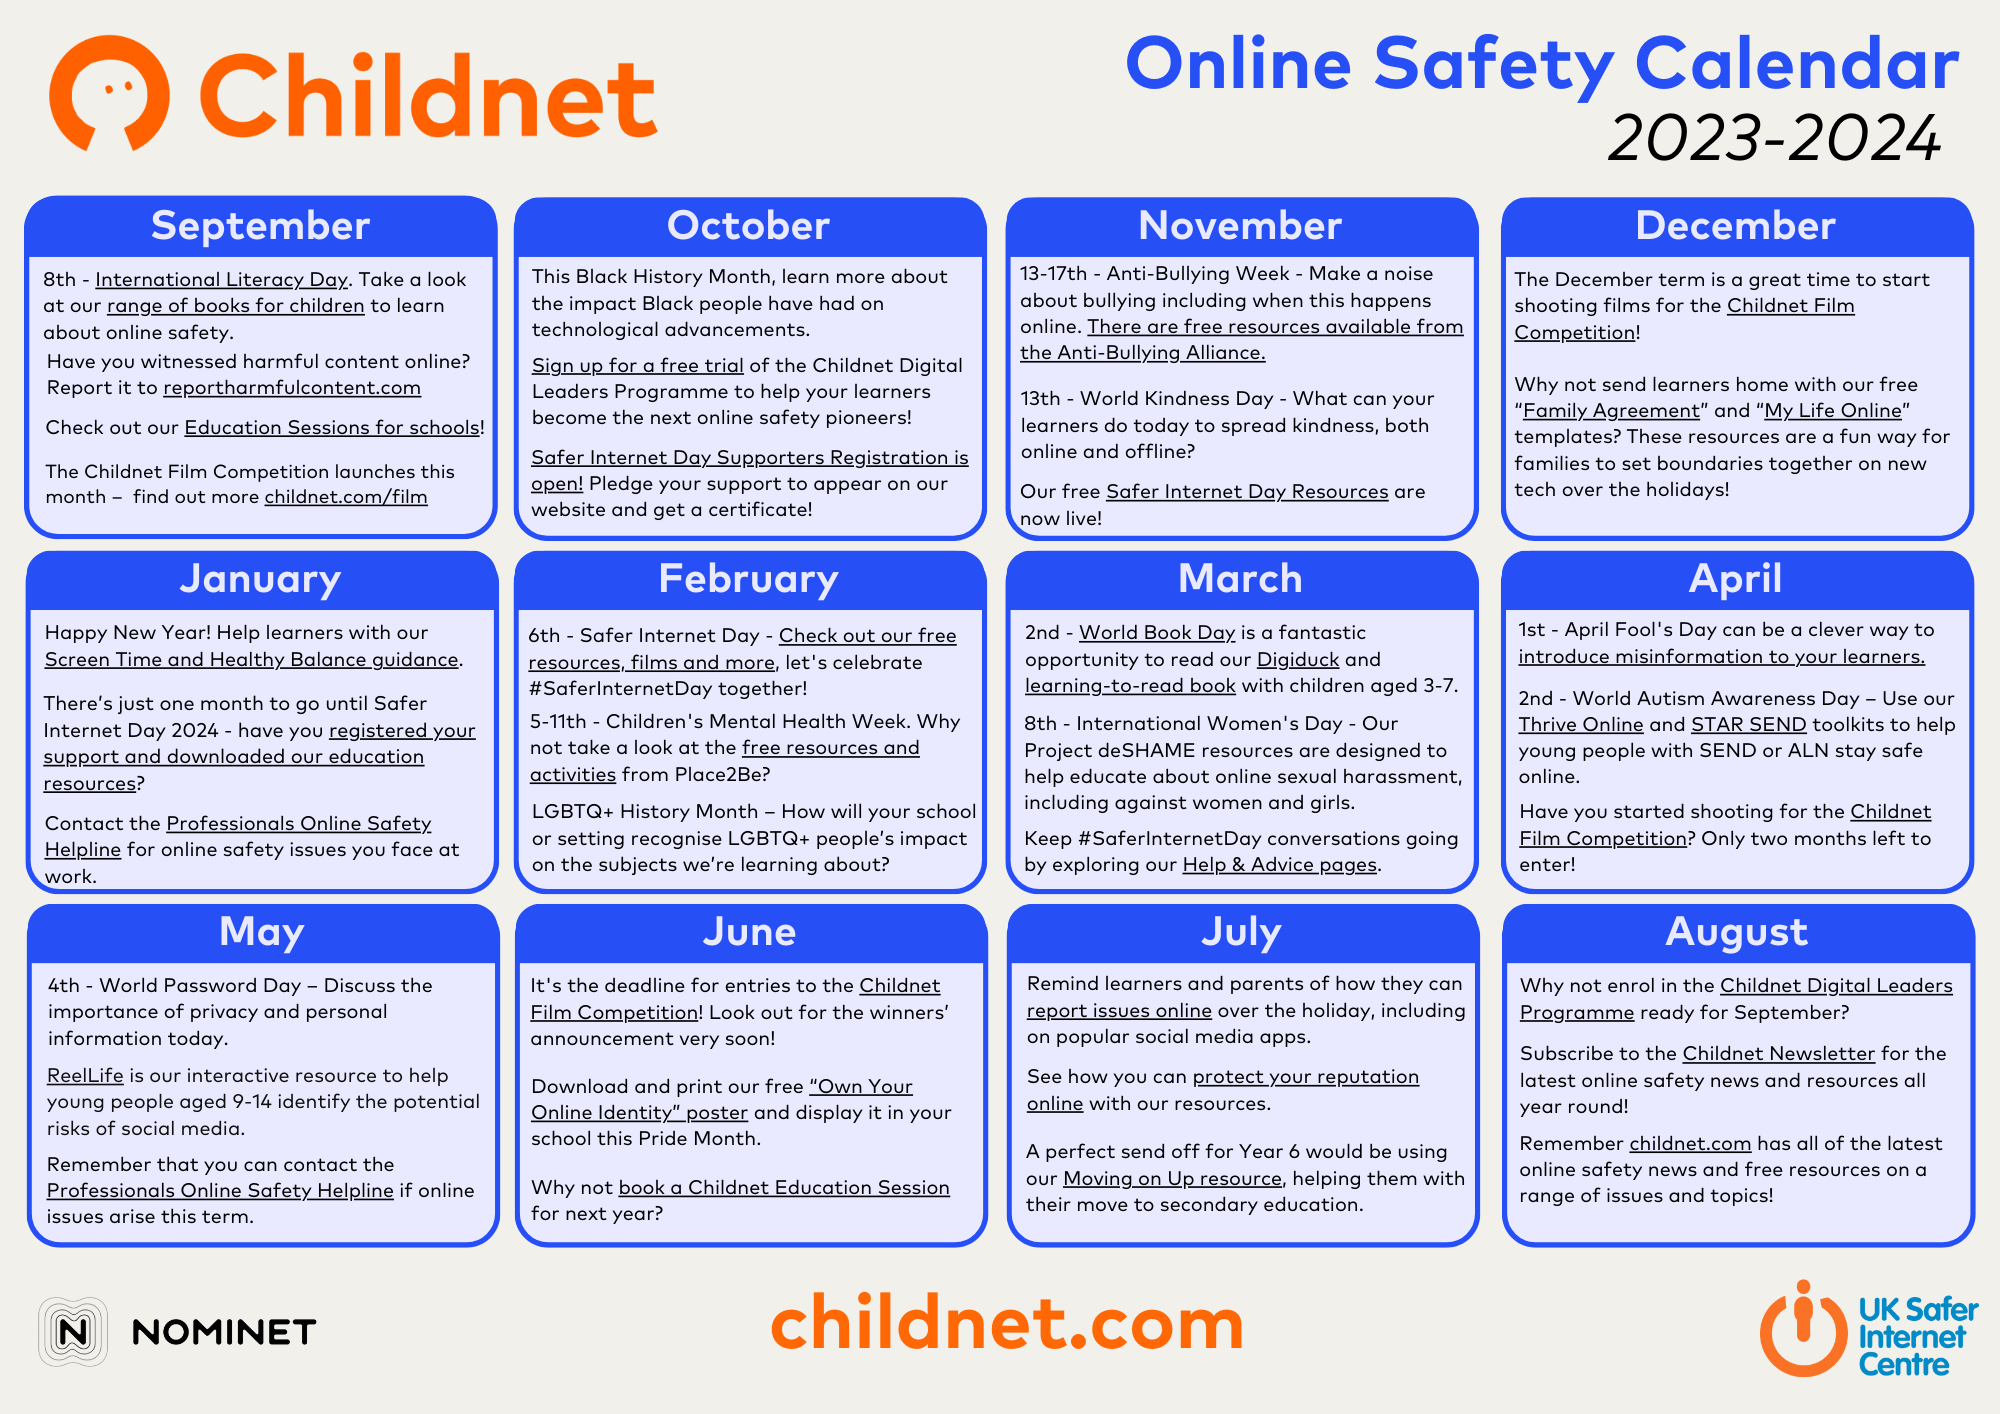 14 Best Safe Kid Games Websites - Educators Technology